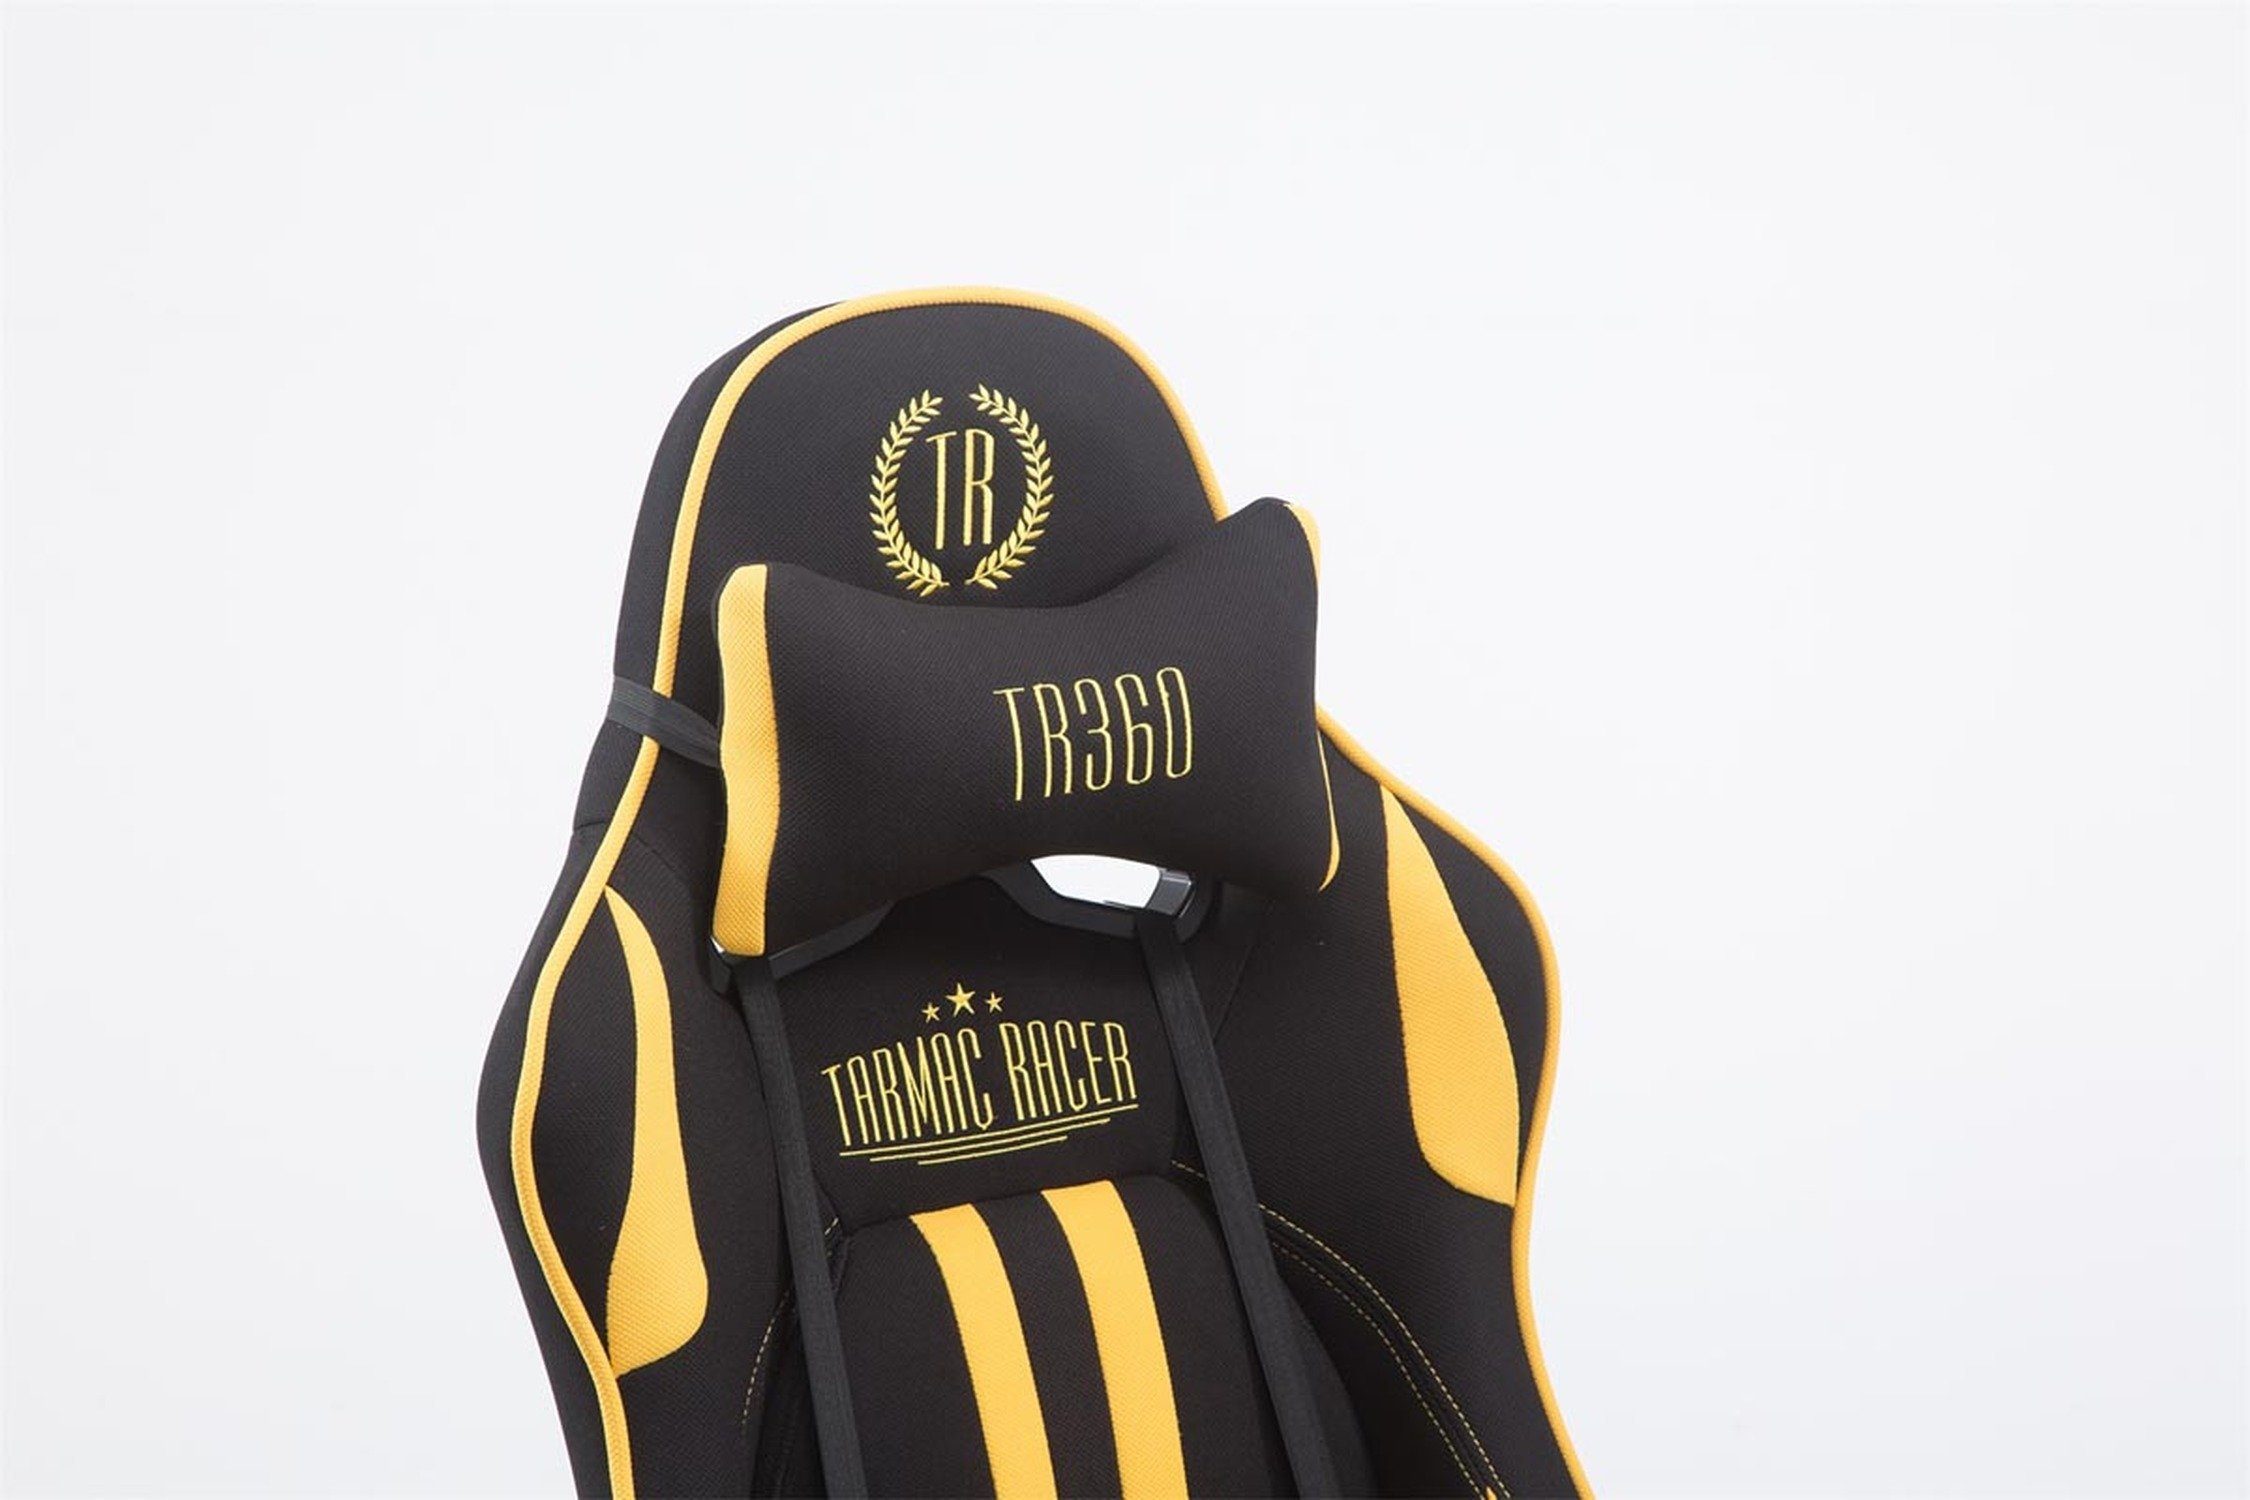 TPFLiving Gaming-Stuhl - mit 360° Rückenlehne Limitless-2 bequemer schwarz/gelb drehbar chrom Sitzfläche: Chefsessel), - Racingstuhl, Drehstuhl, Metall (Schreibtischstuhl, Stoff Gamingstuhl, - Gestell: höhenverstellbar